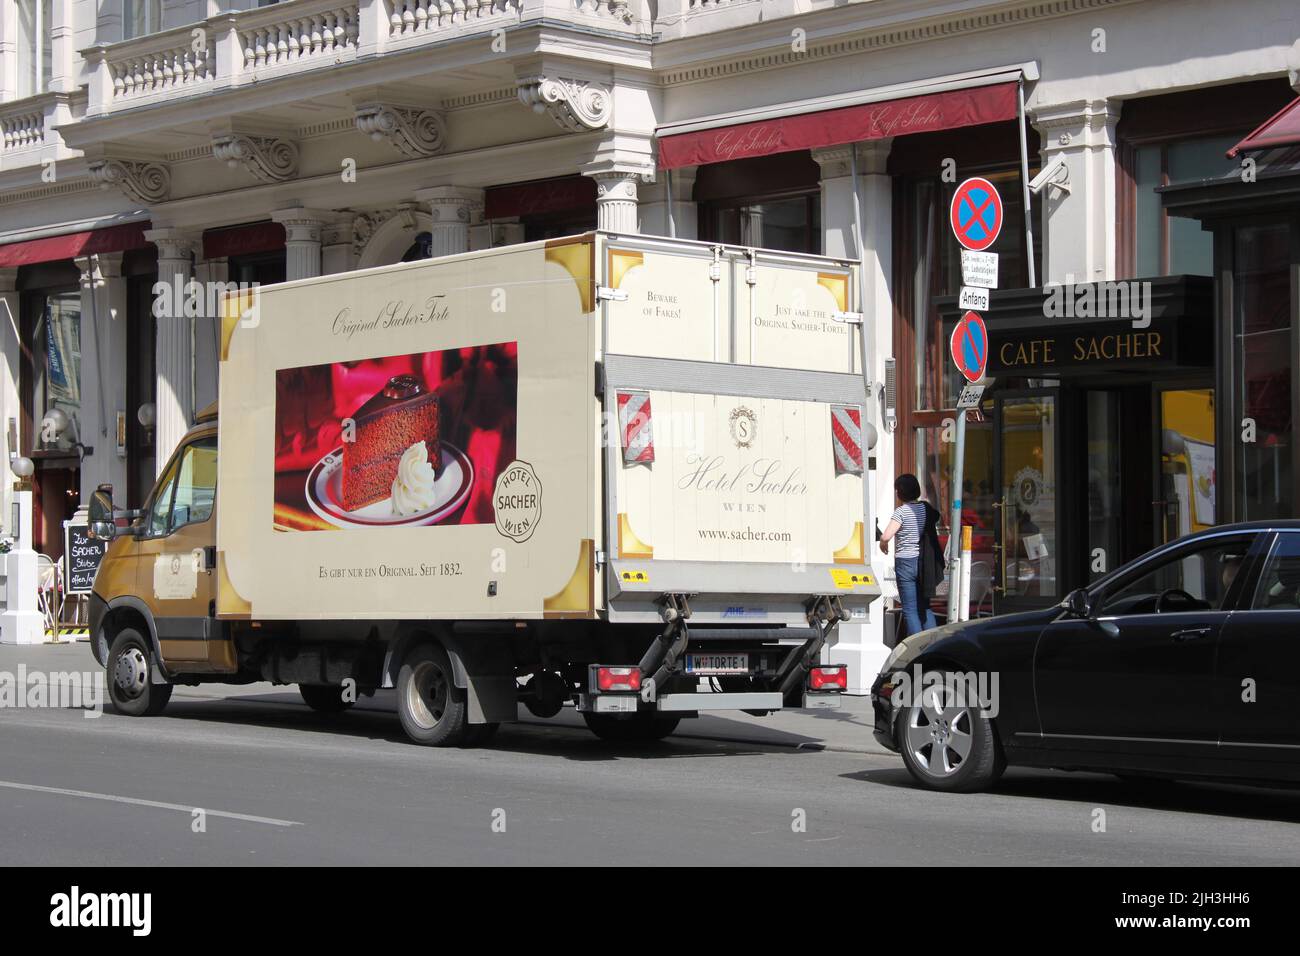 Vienne, Autriche - 20 avril 2012 : véhicule de livraison de marque près du célèbre café Sacher Banque D'Images